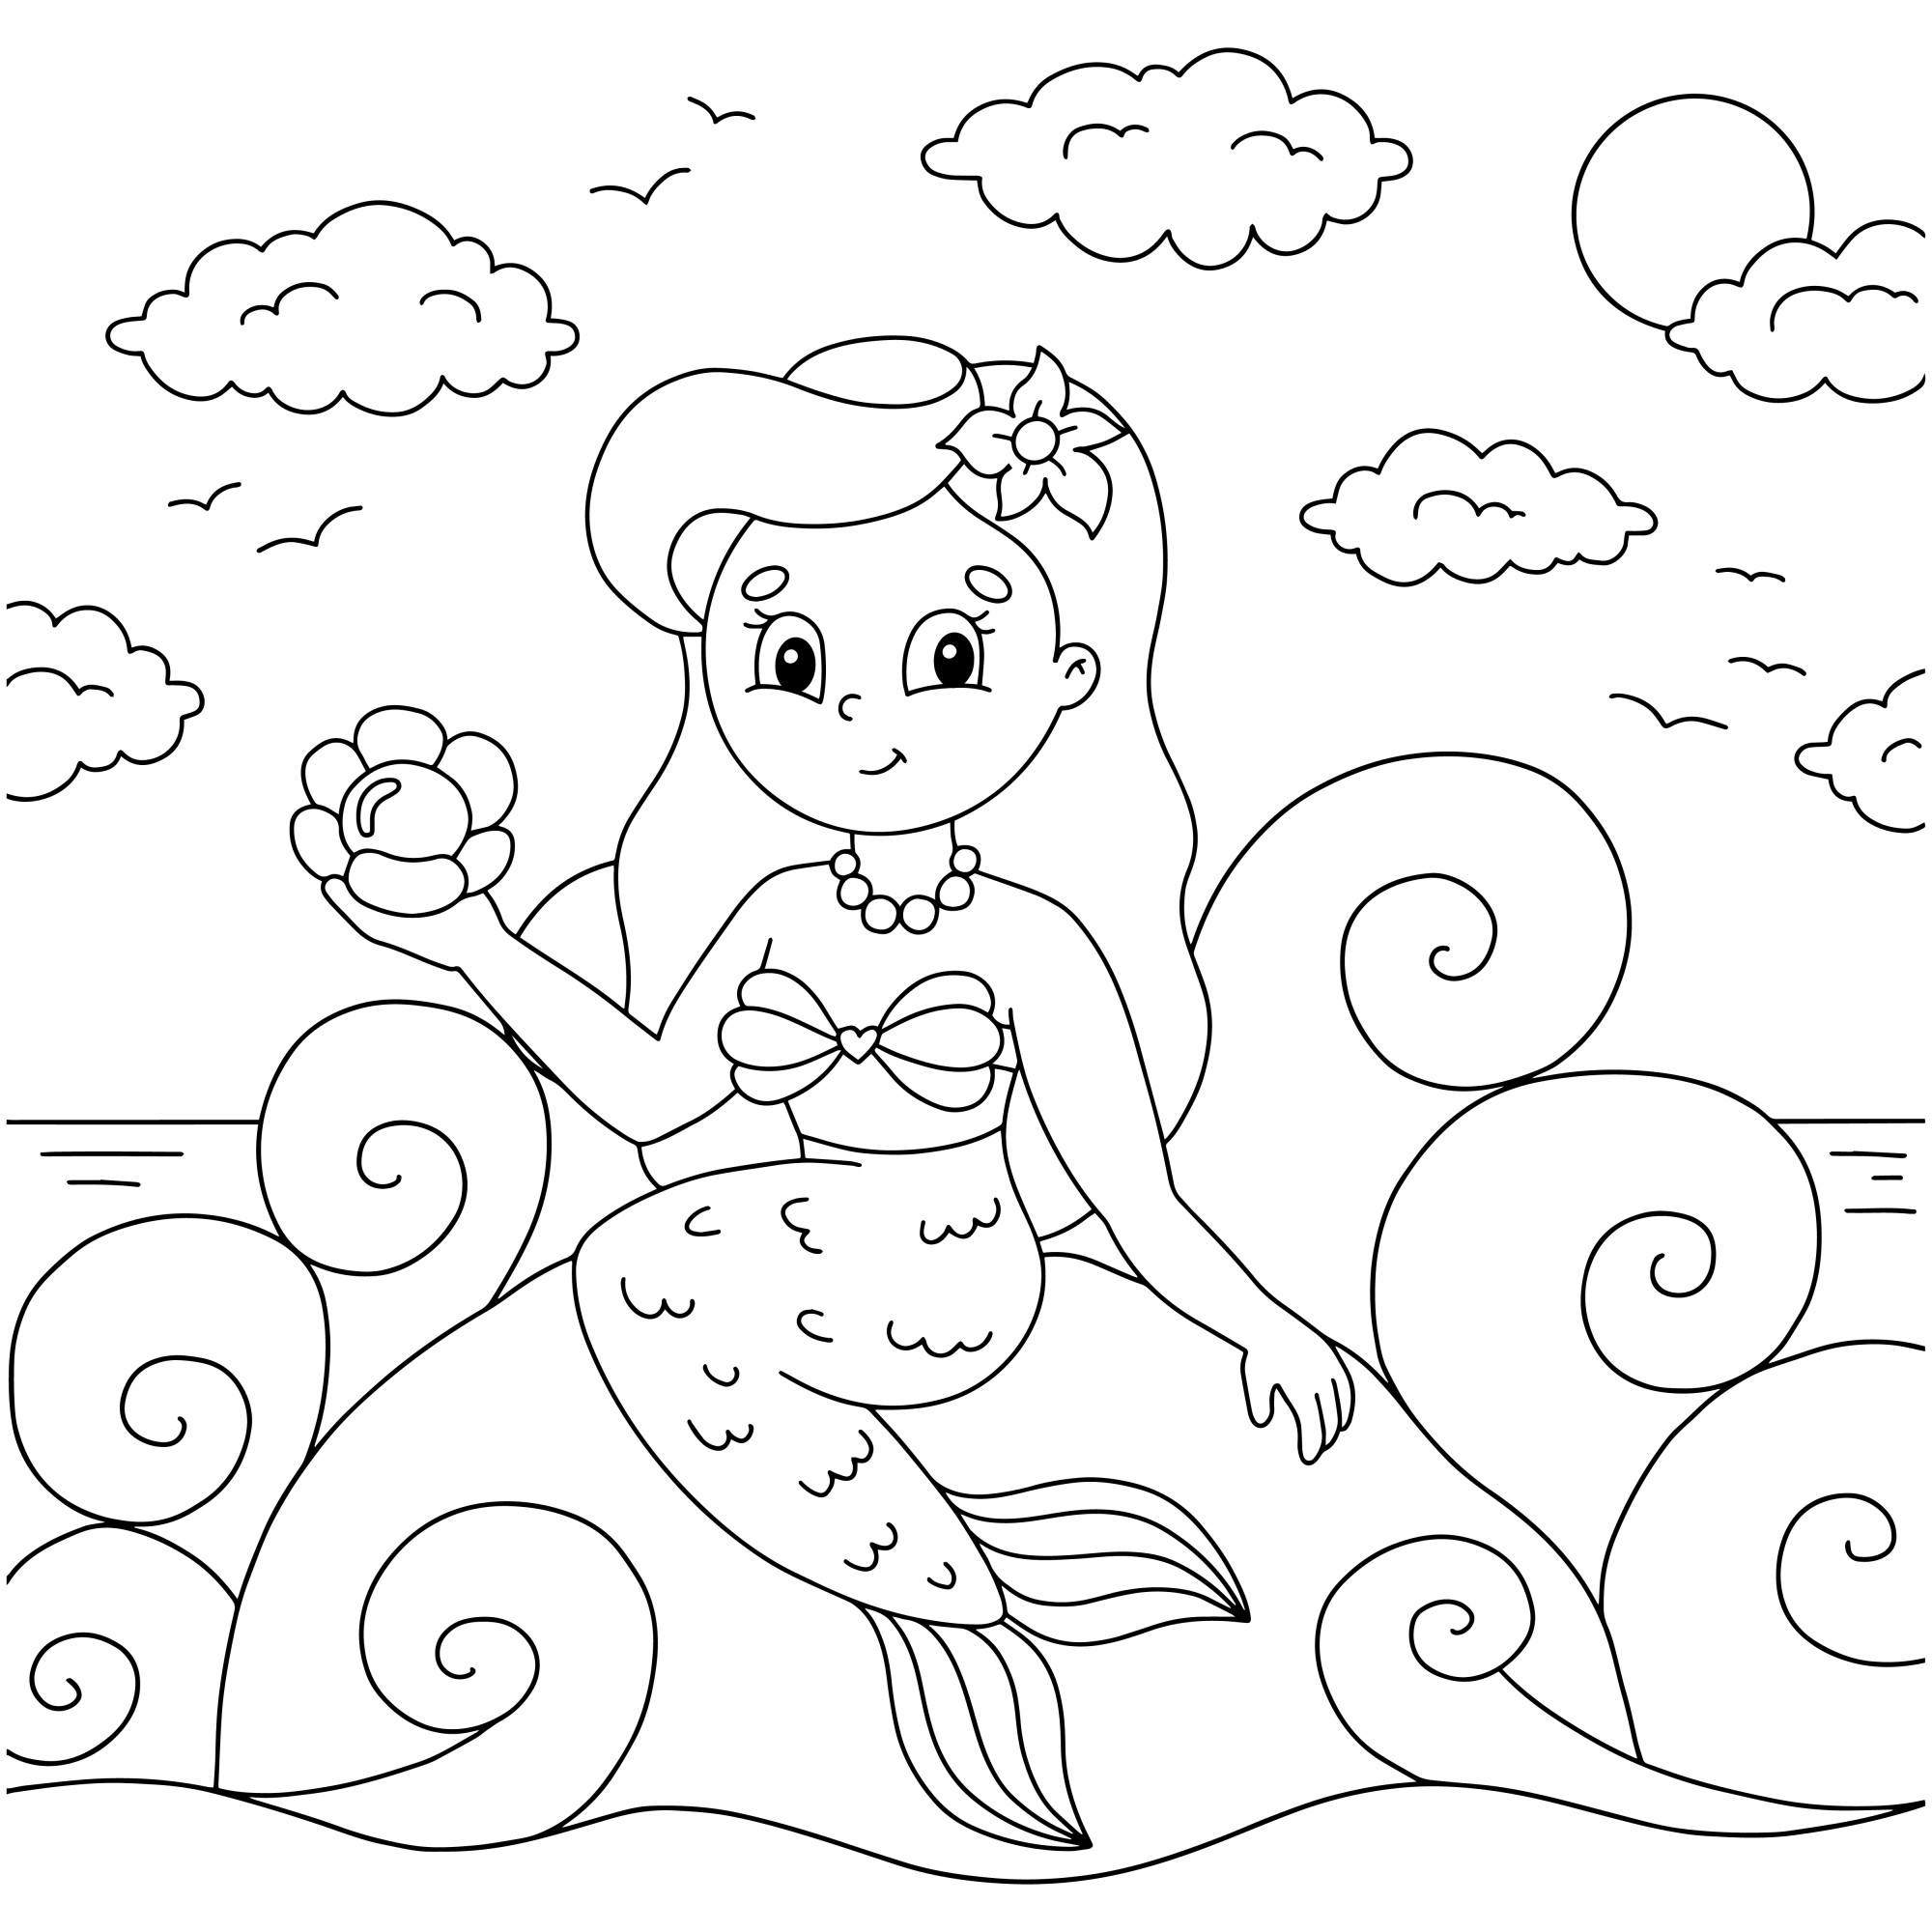 Раскраска для детей: морской бриз и молодая русалка на камне